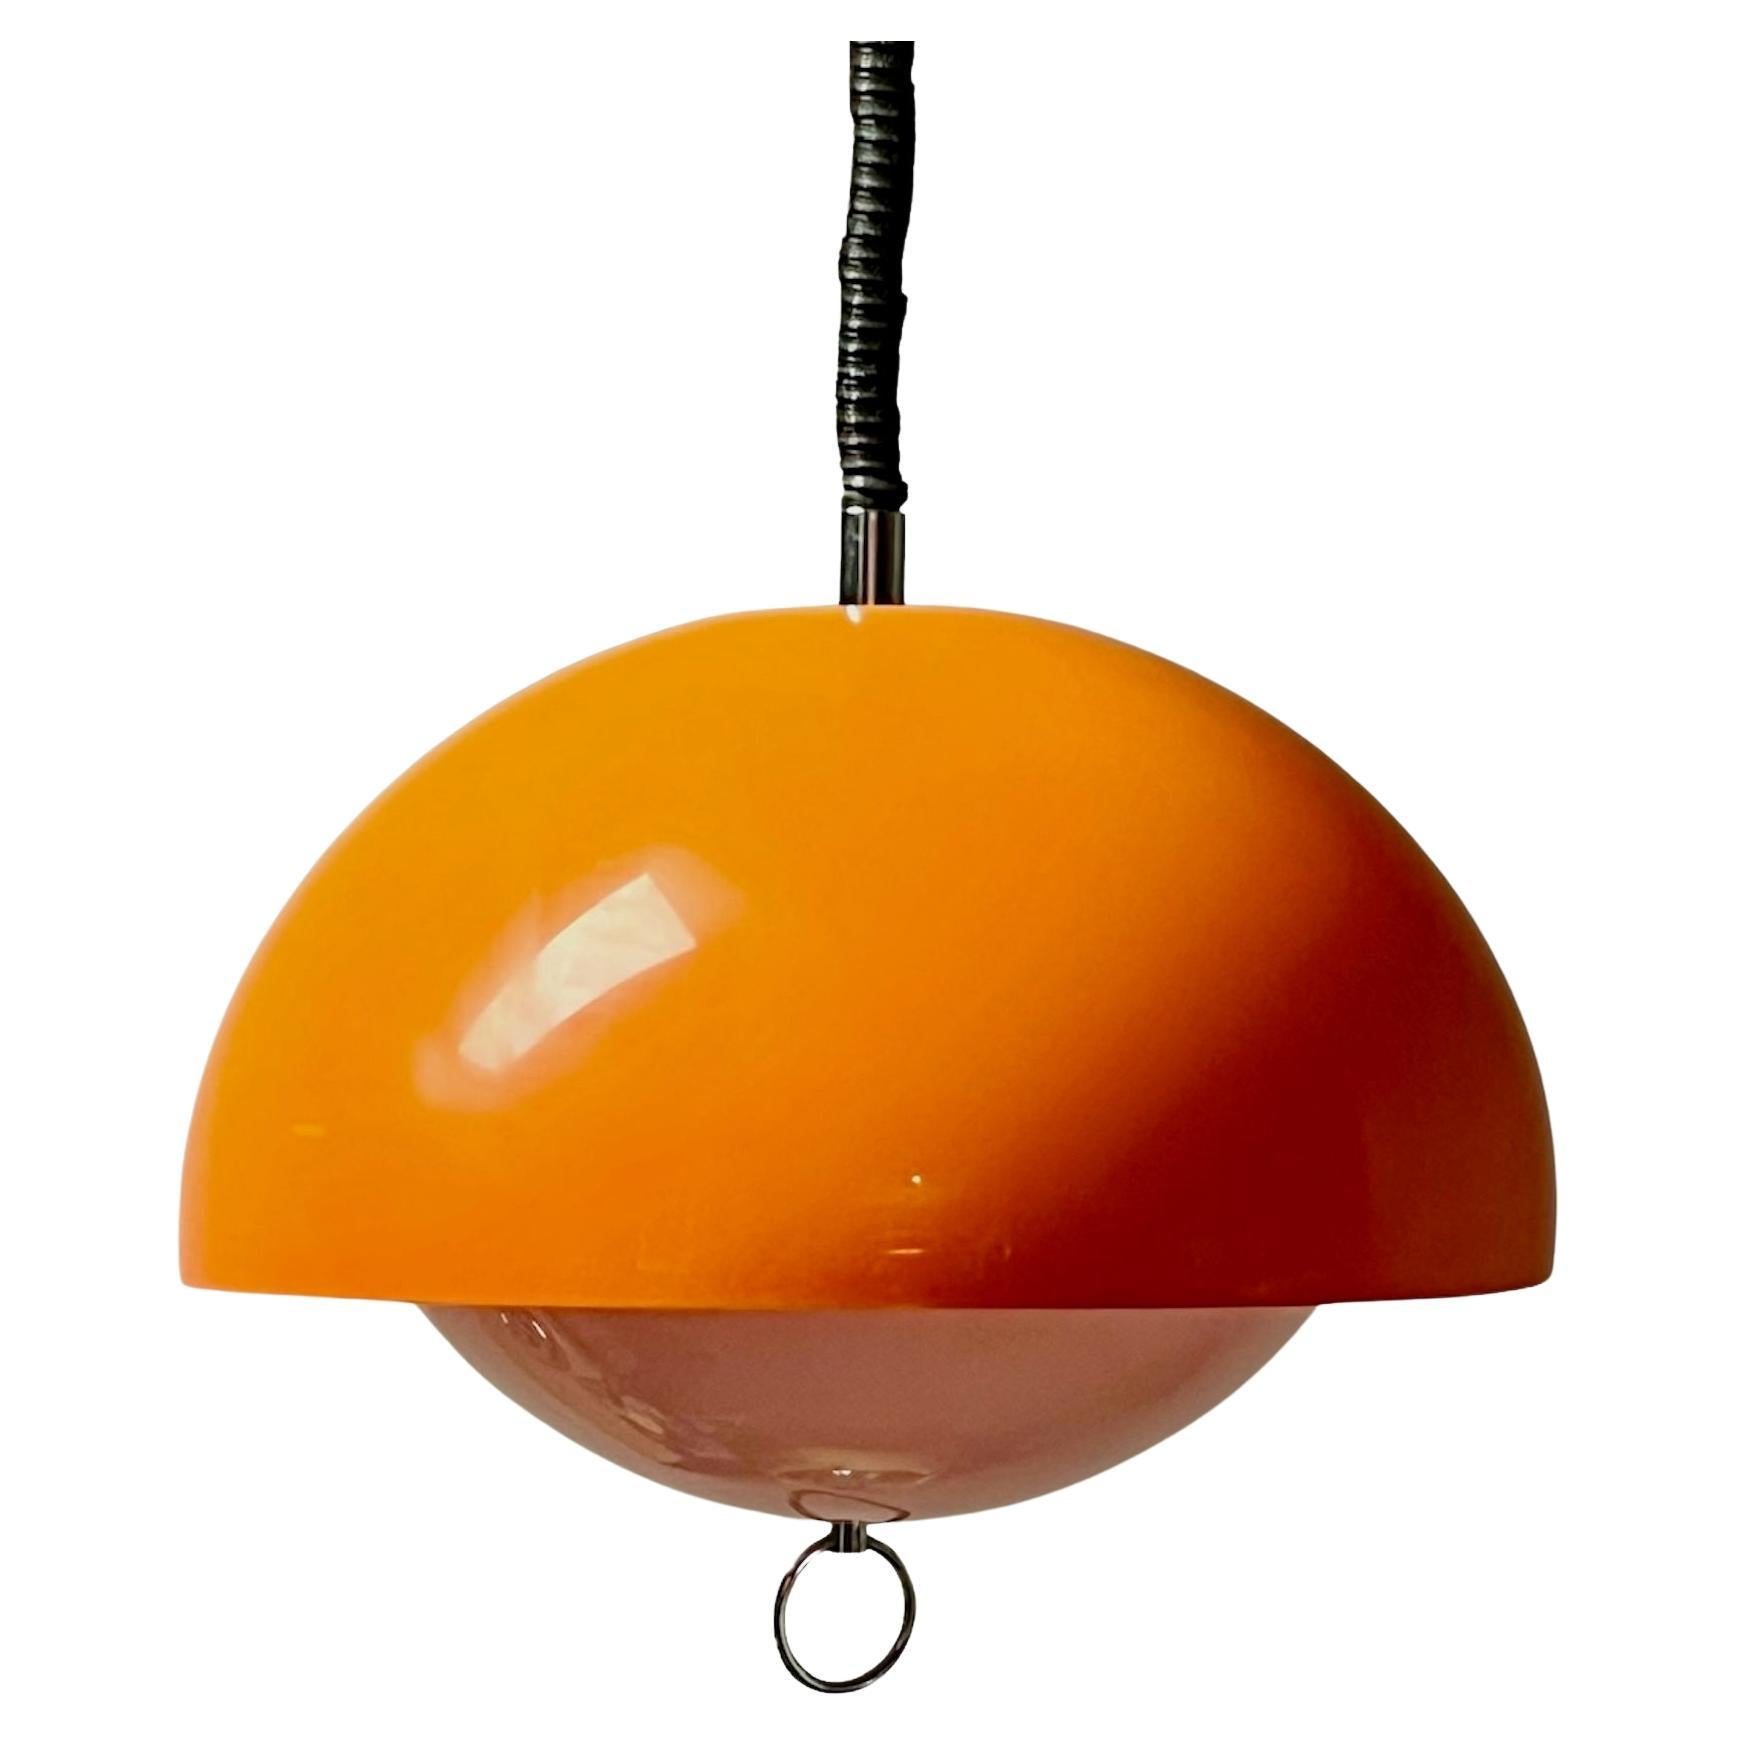  Large Space Age Lamp Orange Acrylic Lamp - Vintage Harvey Guzzini Style, 1970s